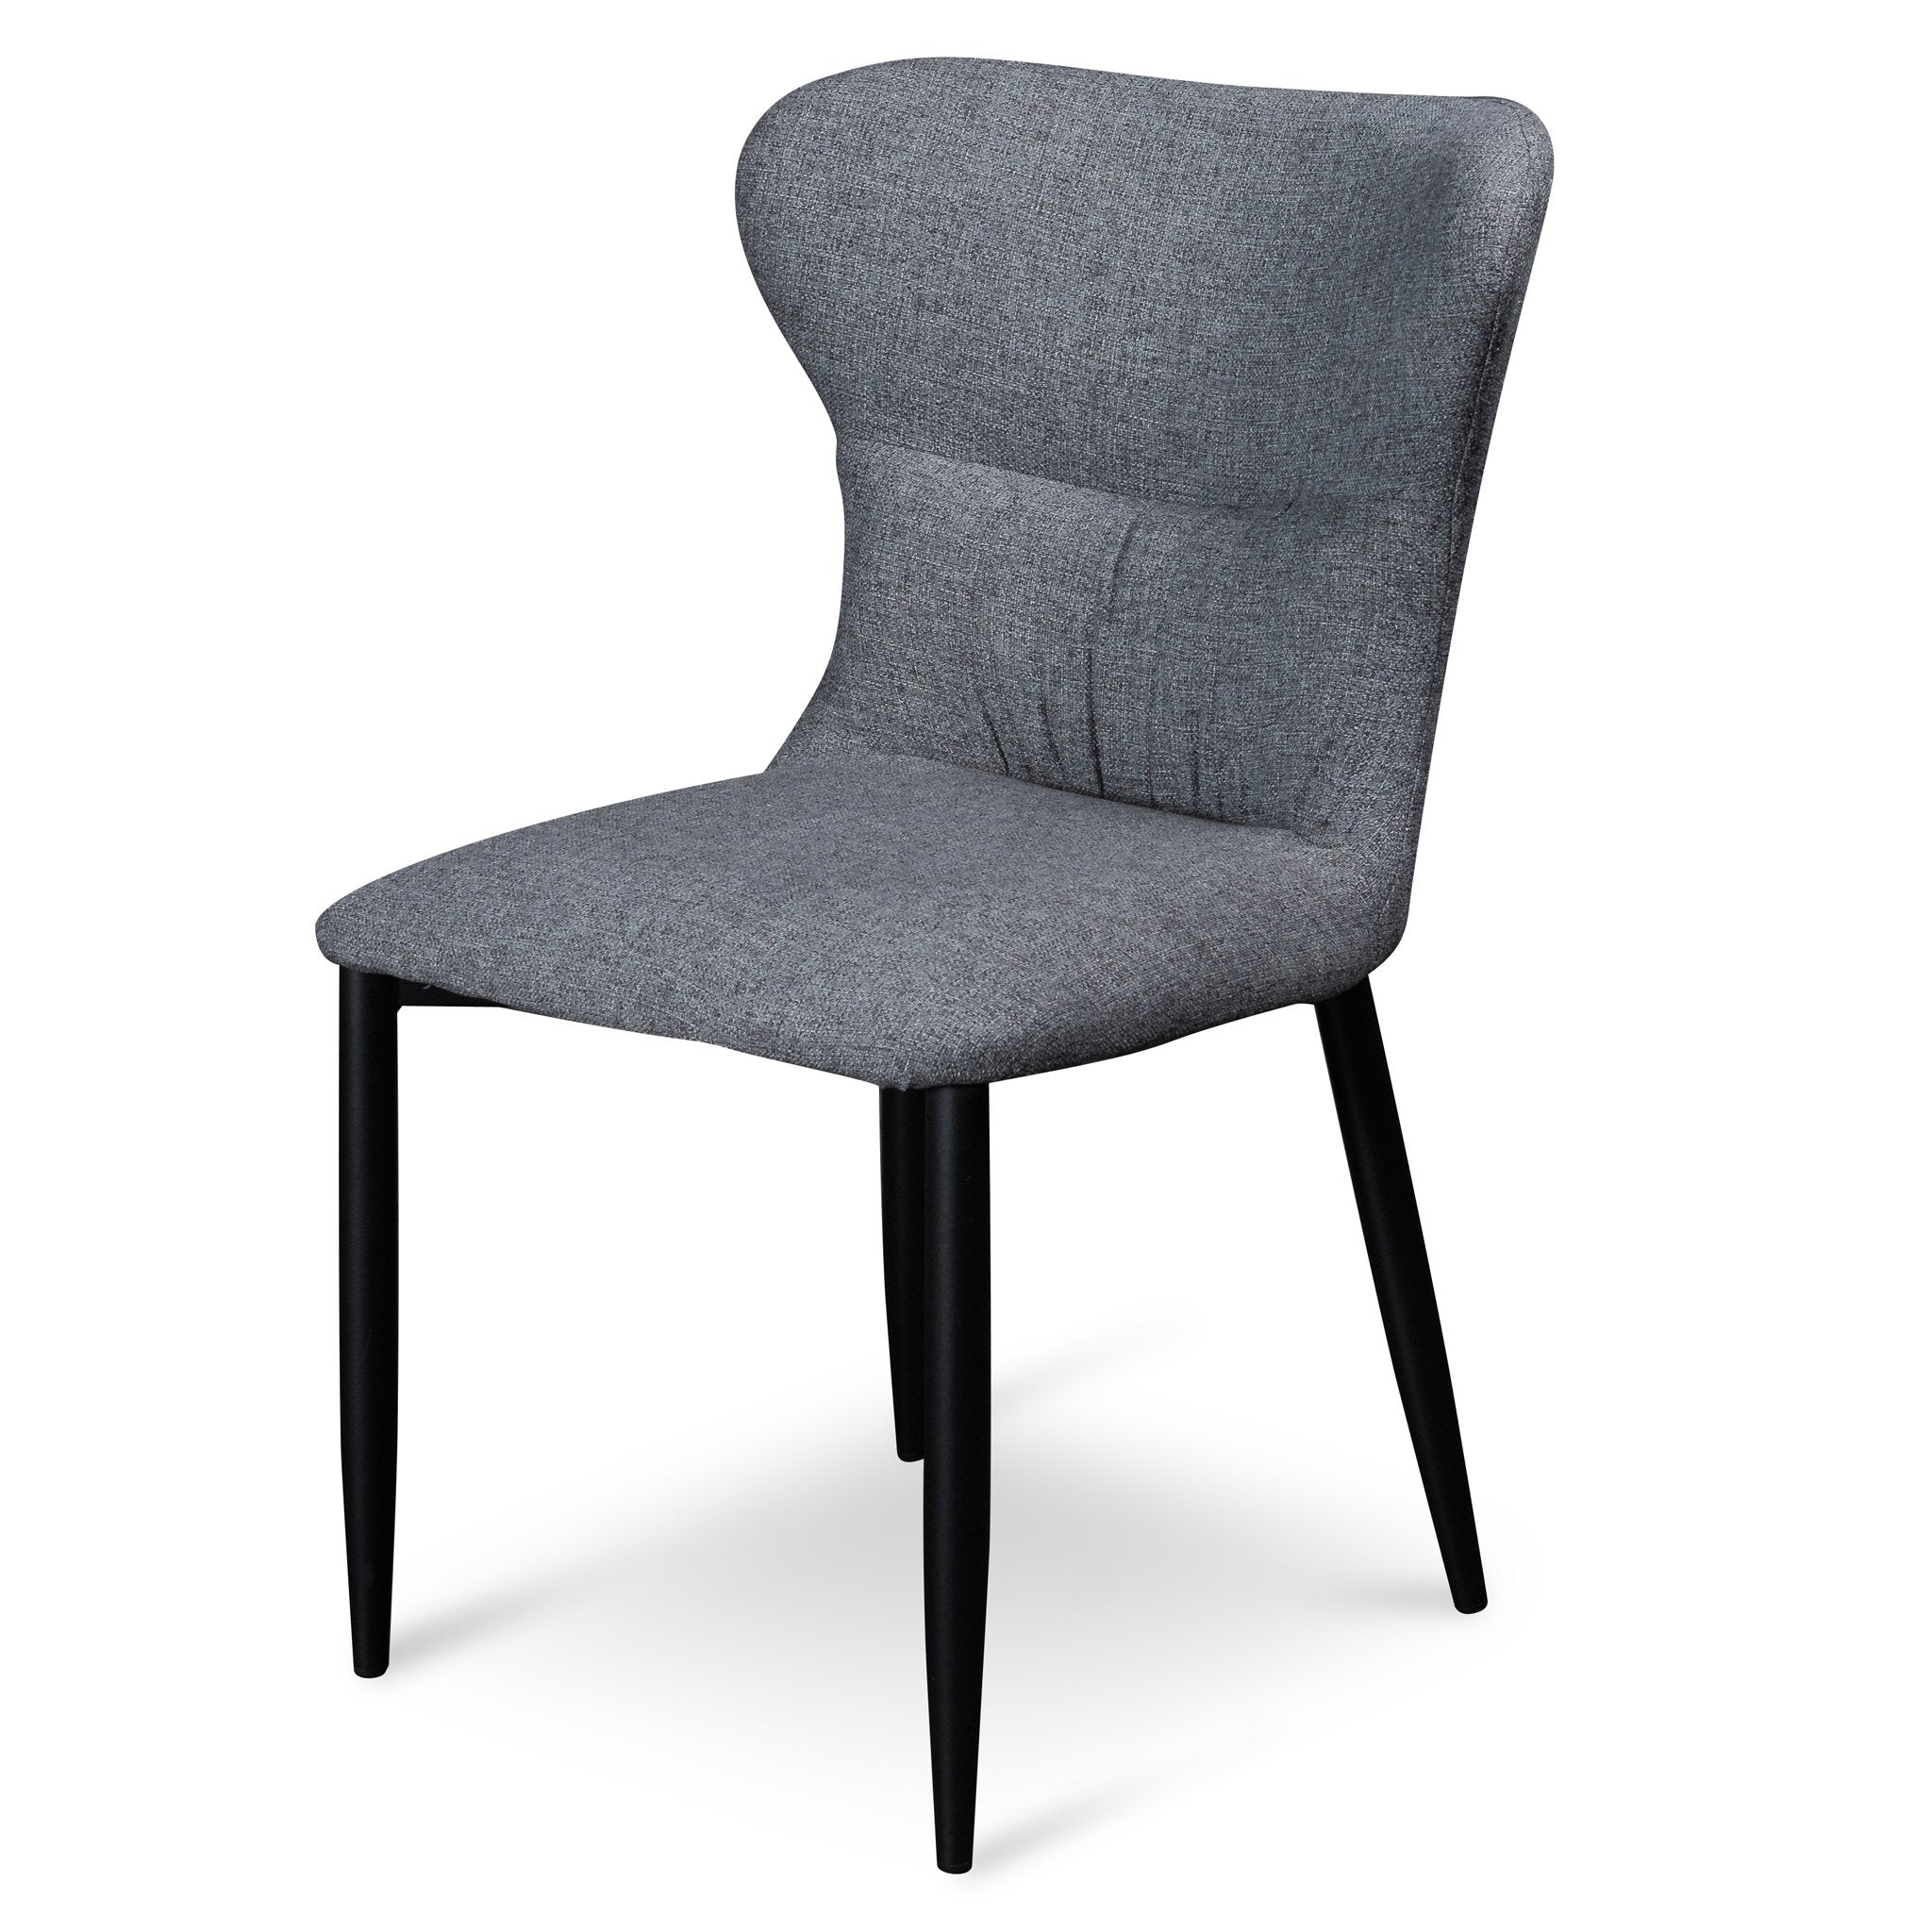 Anastasia Fabric Dining Chair - Pebble Grey